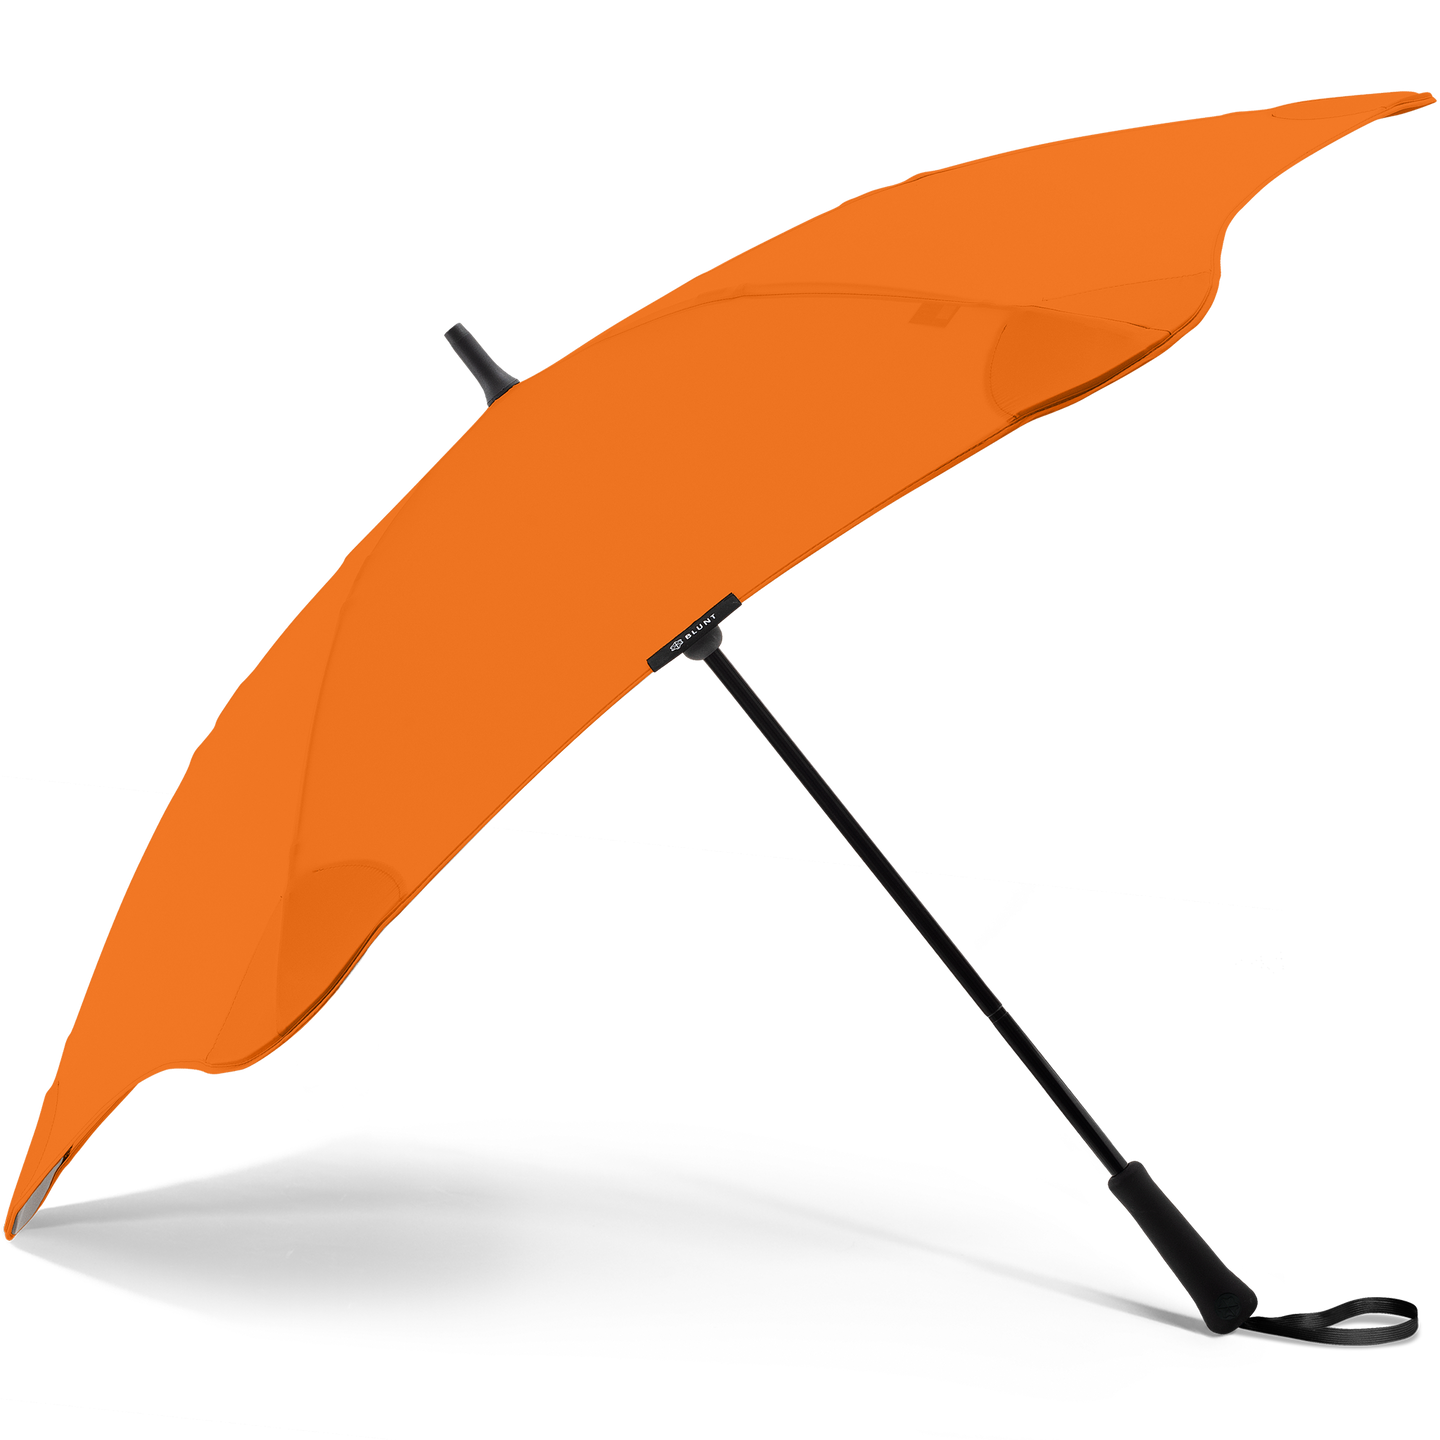 2020 Classic Orange Blunt Umbrella Side View